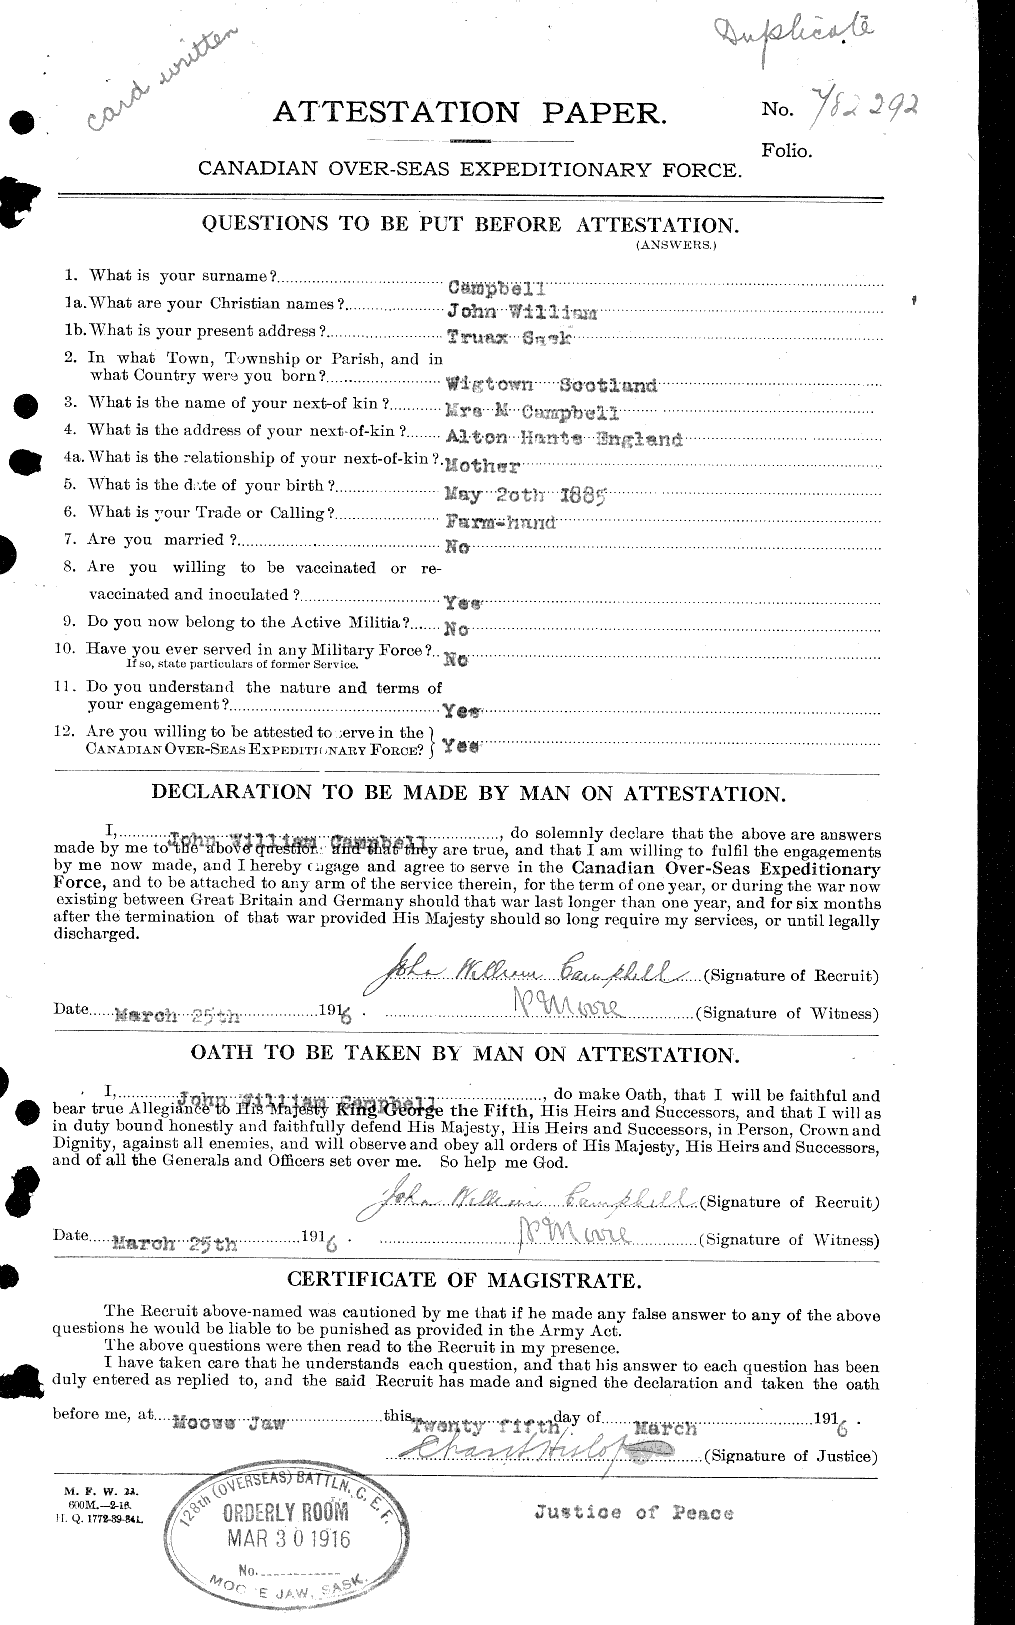 Dossiers du Personnel de la Première Guerre mondiale - CEC 003806a